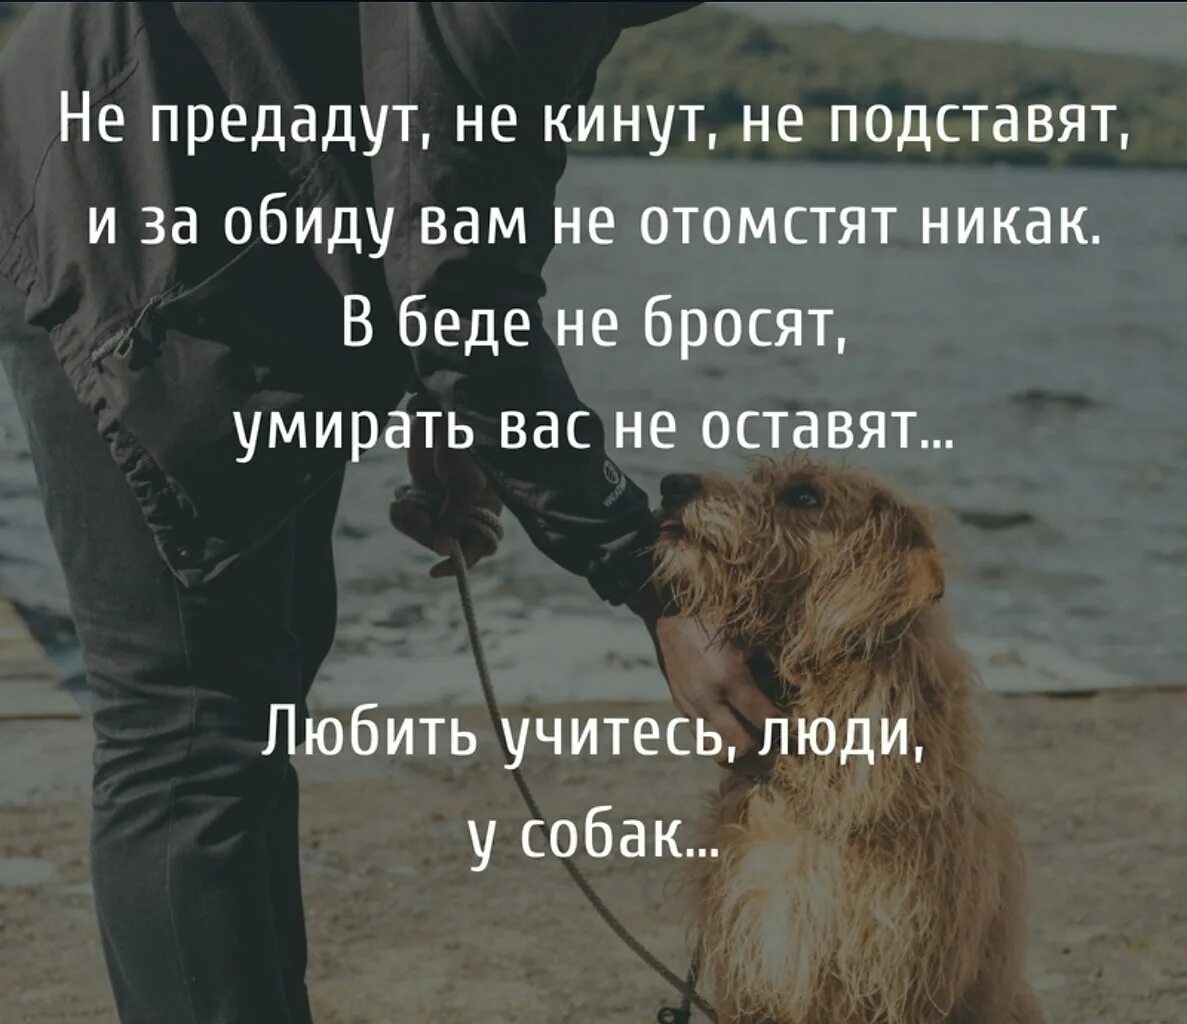 Лучший человек пес. Цитаты про собак. Афоризмы про собак и людей. Собака и человек цитаты. Любите животных цитаты.